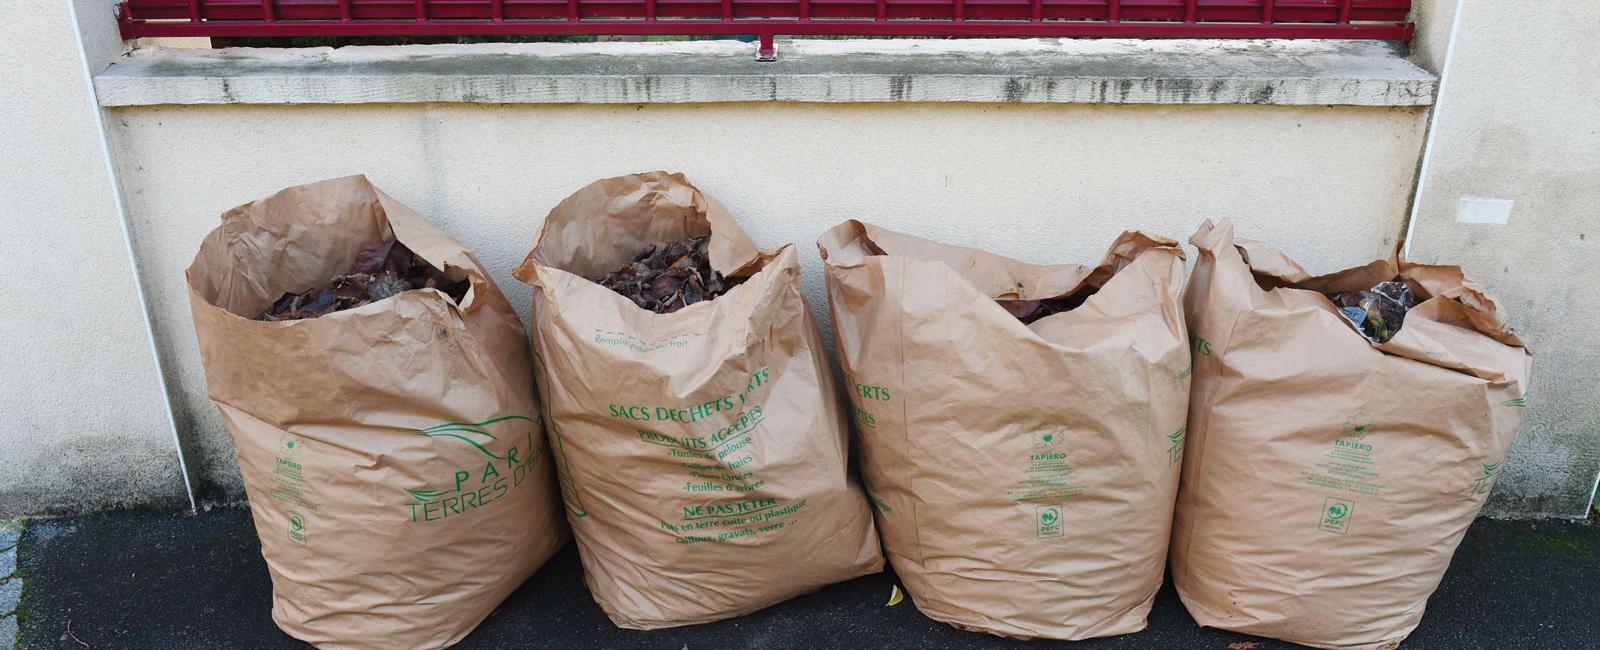 Déchets verts : les anciens sacs verts ne seront plus collectés